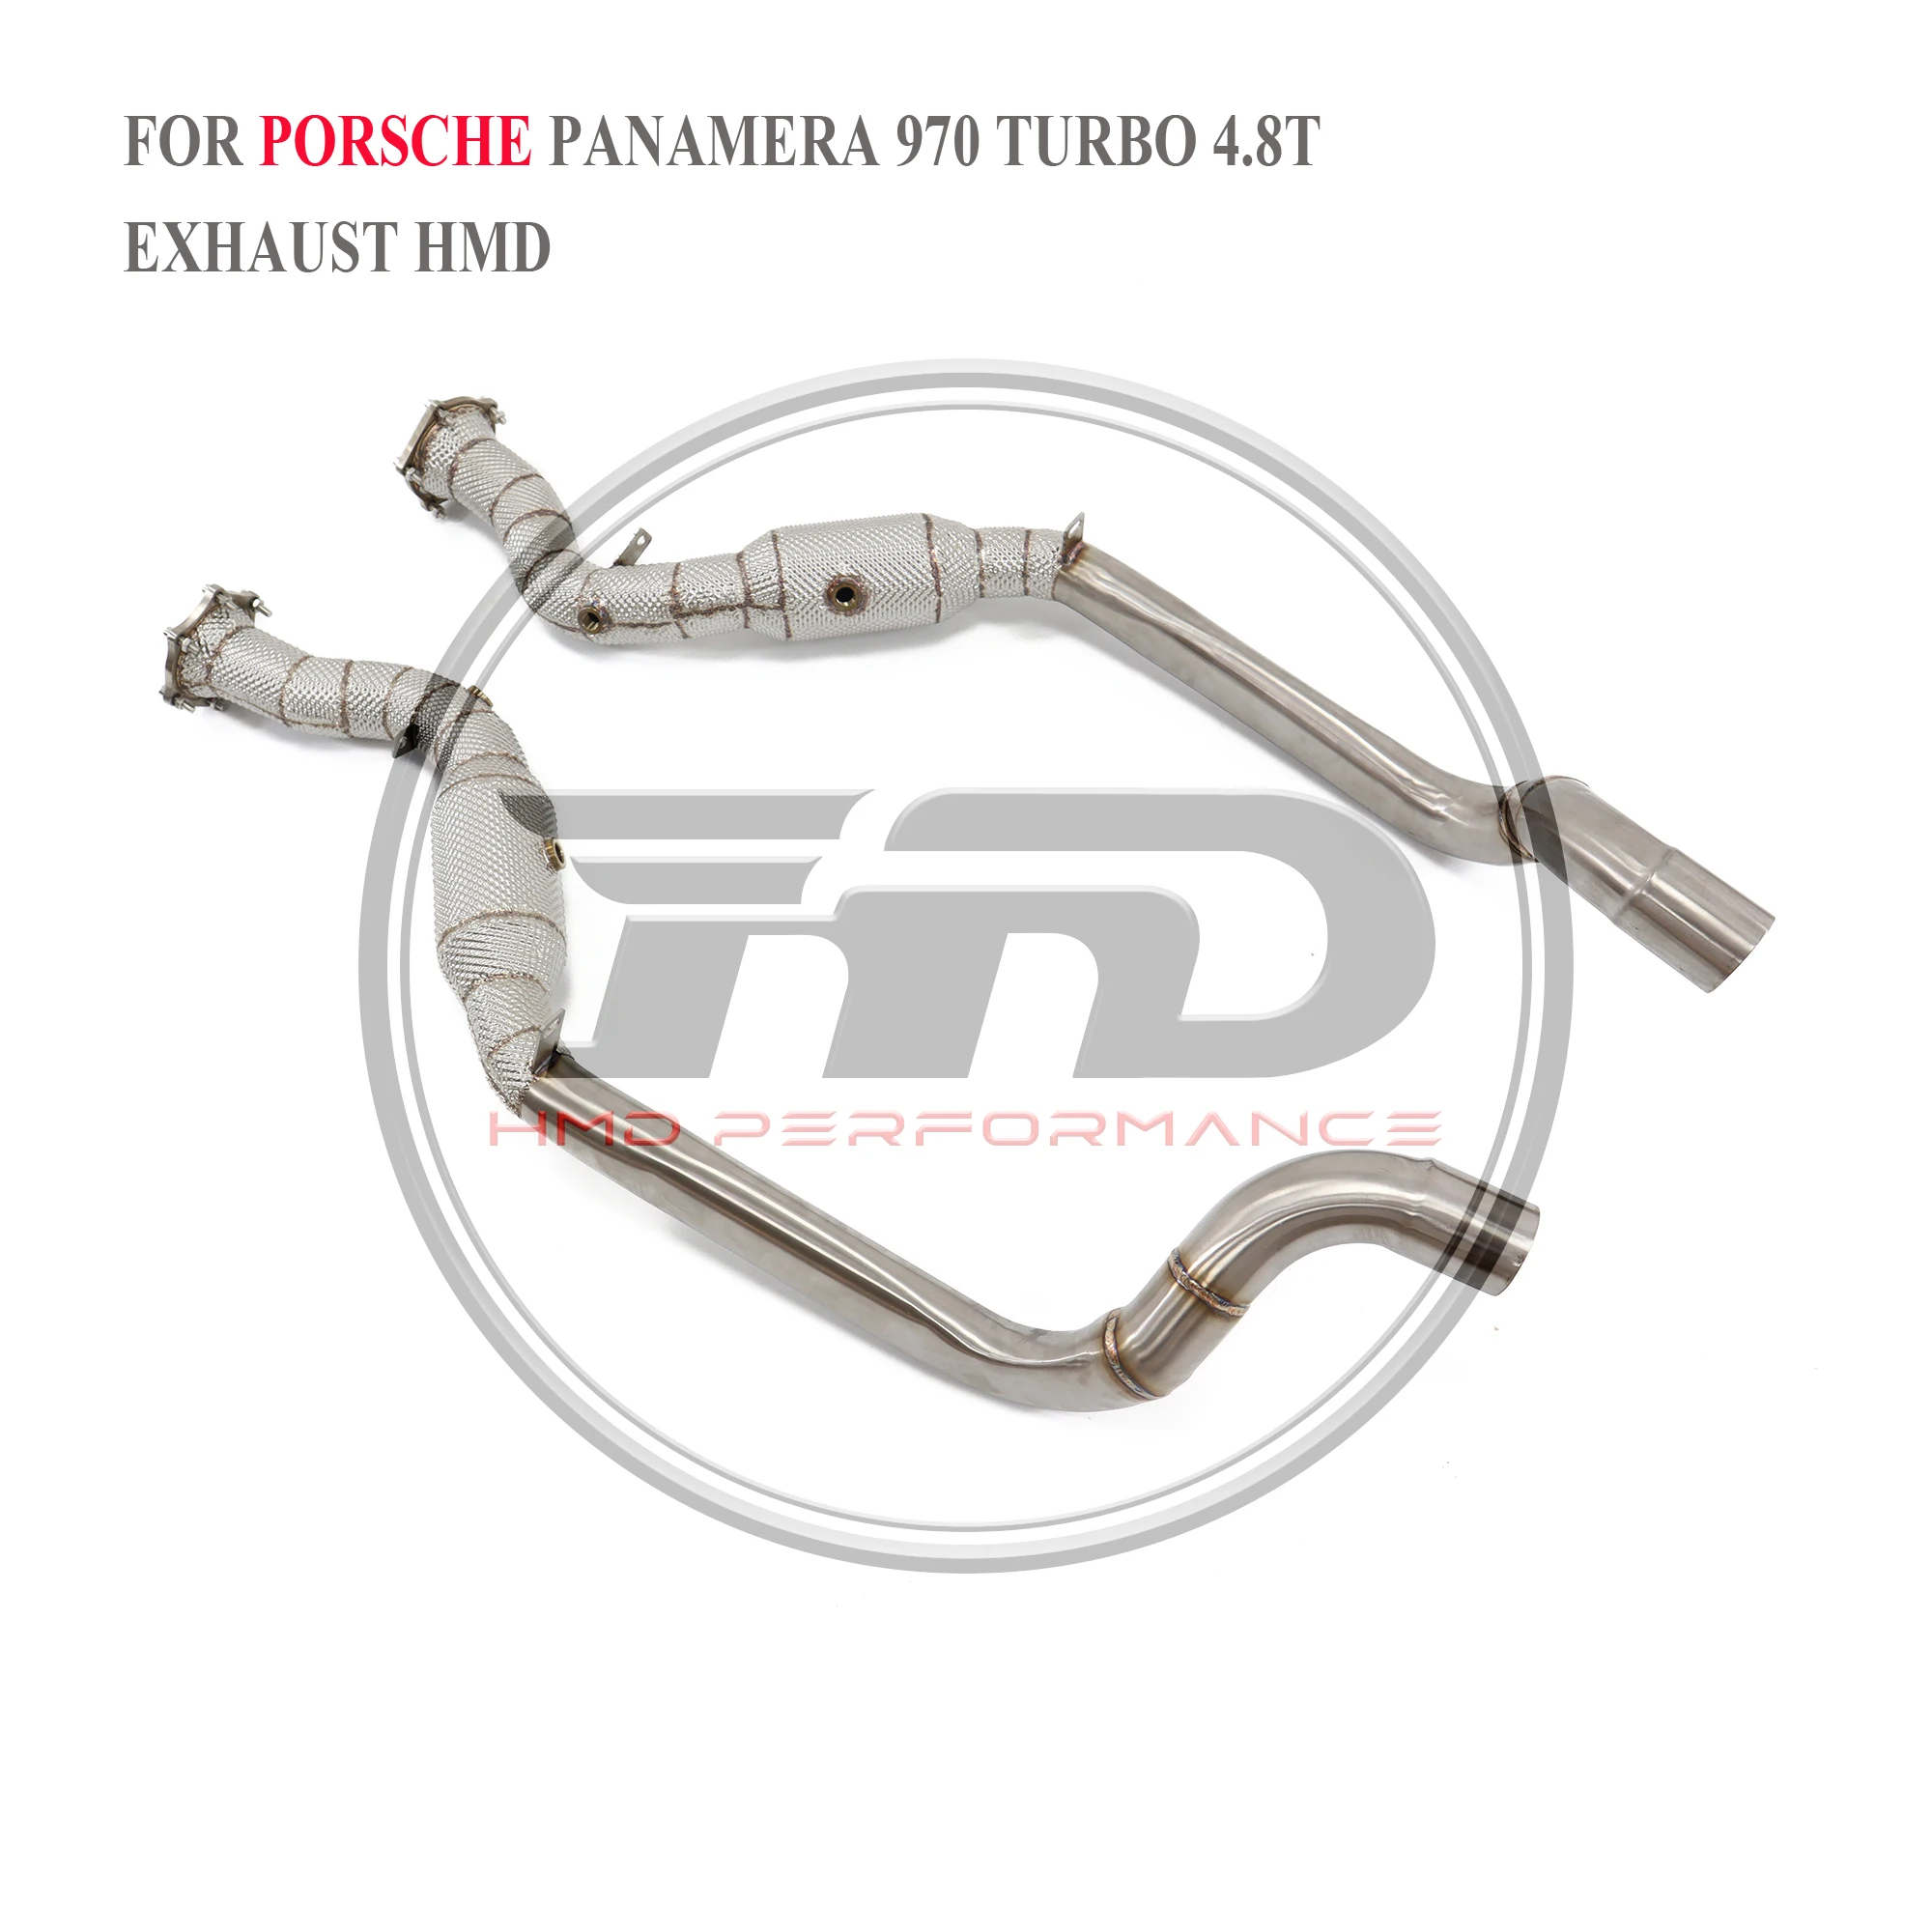 

HMD выхлопная система, высокая производительность потока, труба для Porsche Panamera S 3.6L 4.8L 970,1 2010-2014 с теплозащитной гоночной трубой